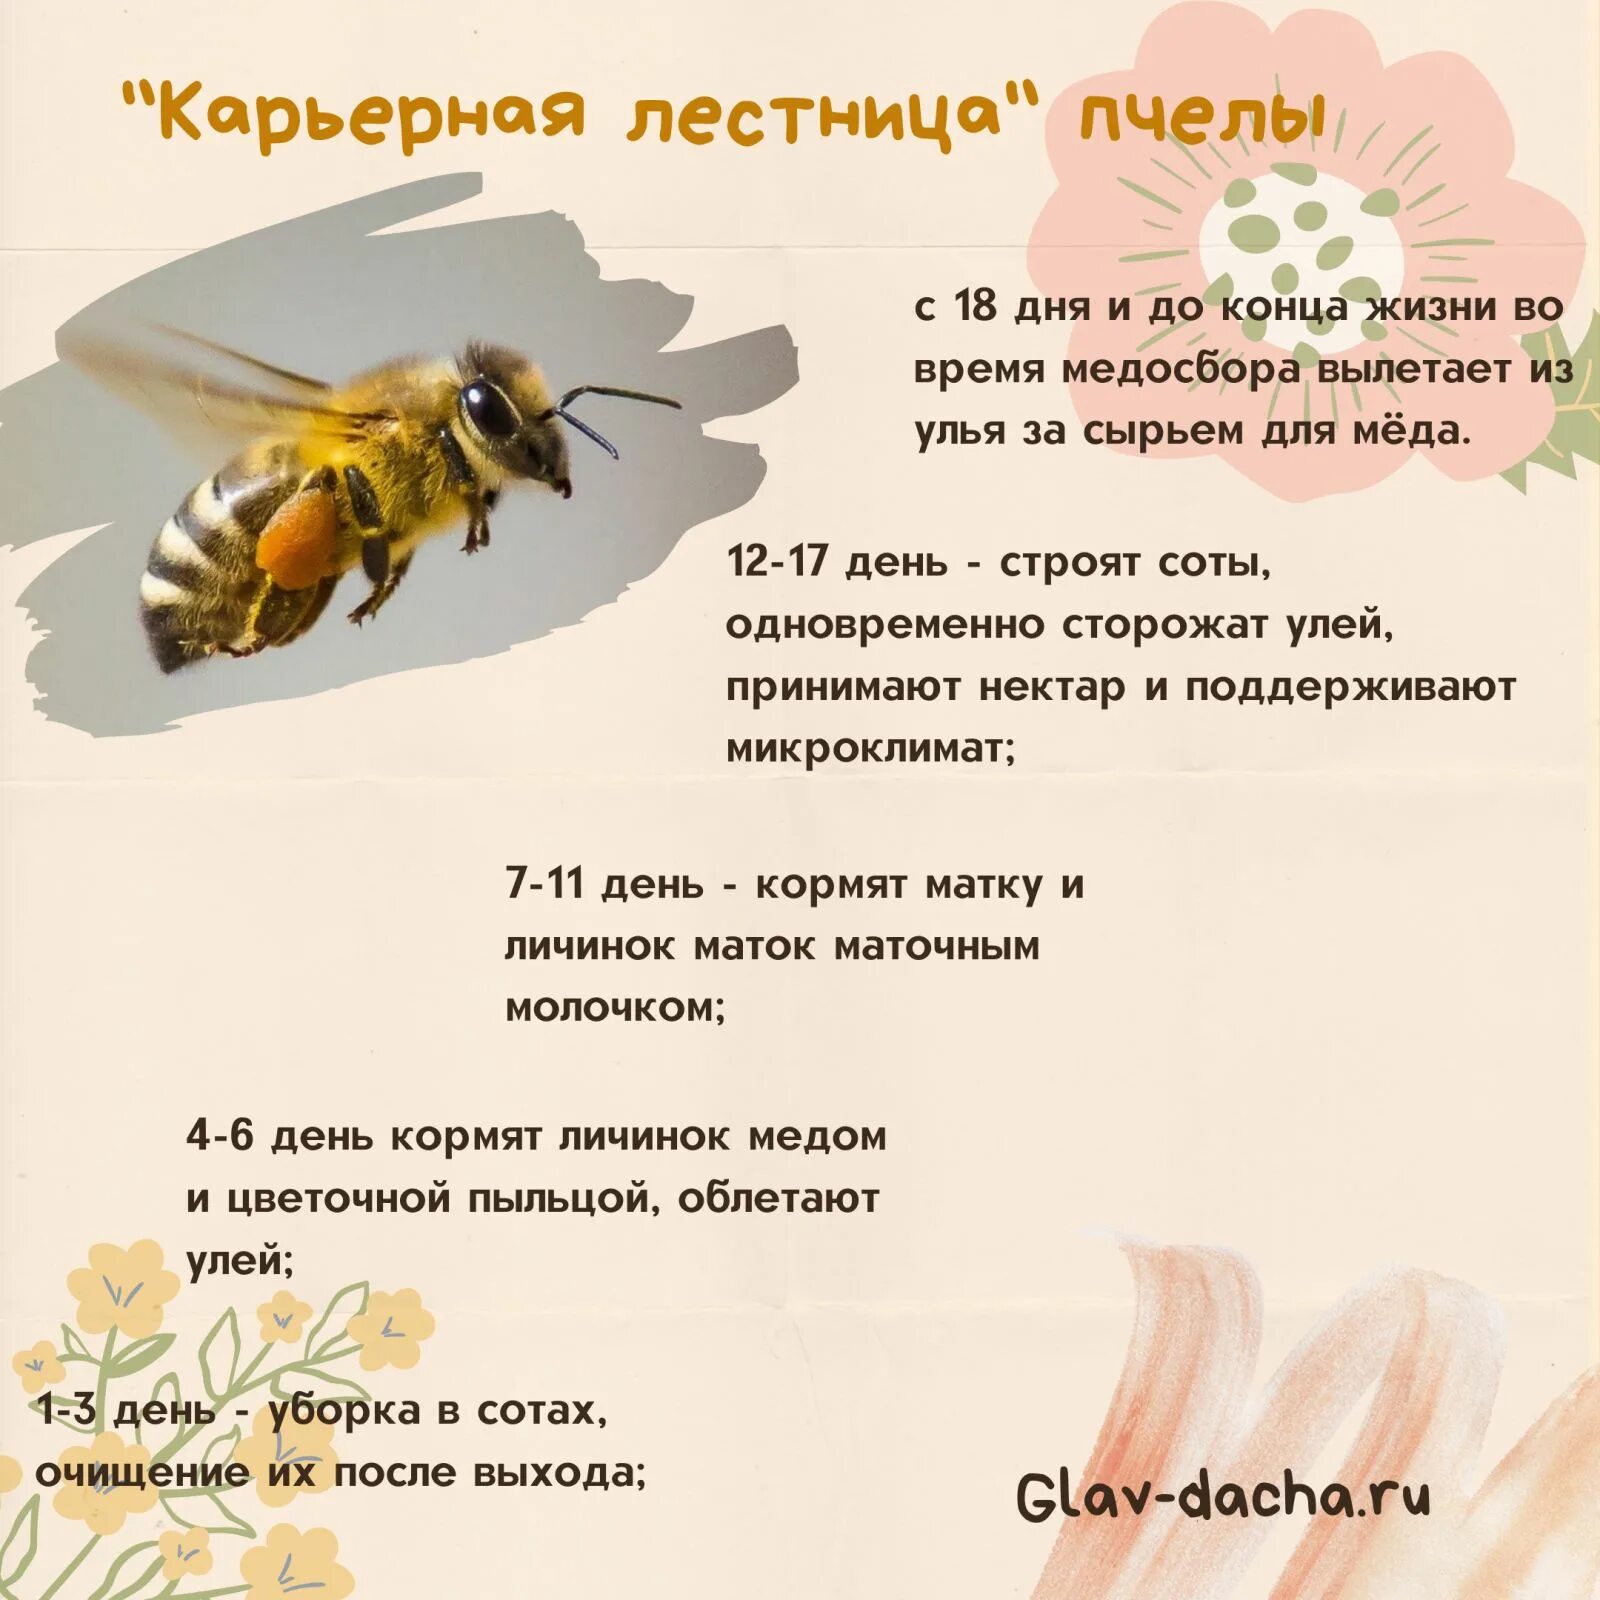 Пчела какая среда обитания. Численность пчел. Все о пчелах. Интересное о пчелах. Продолжителлность жизни пчёл.